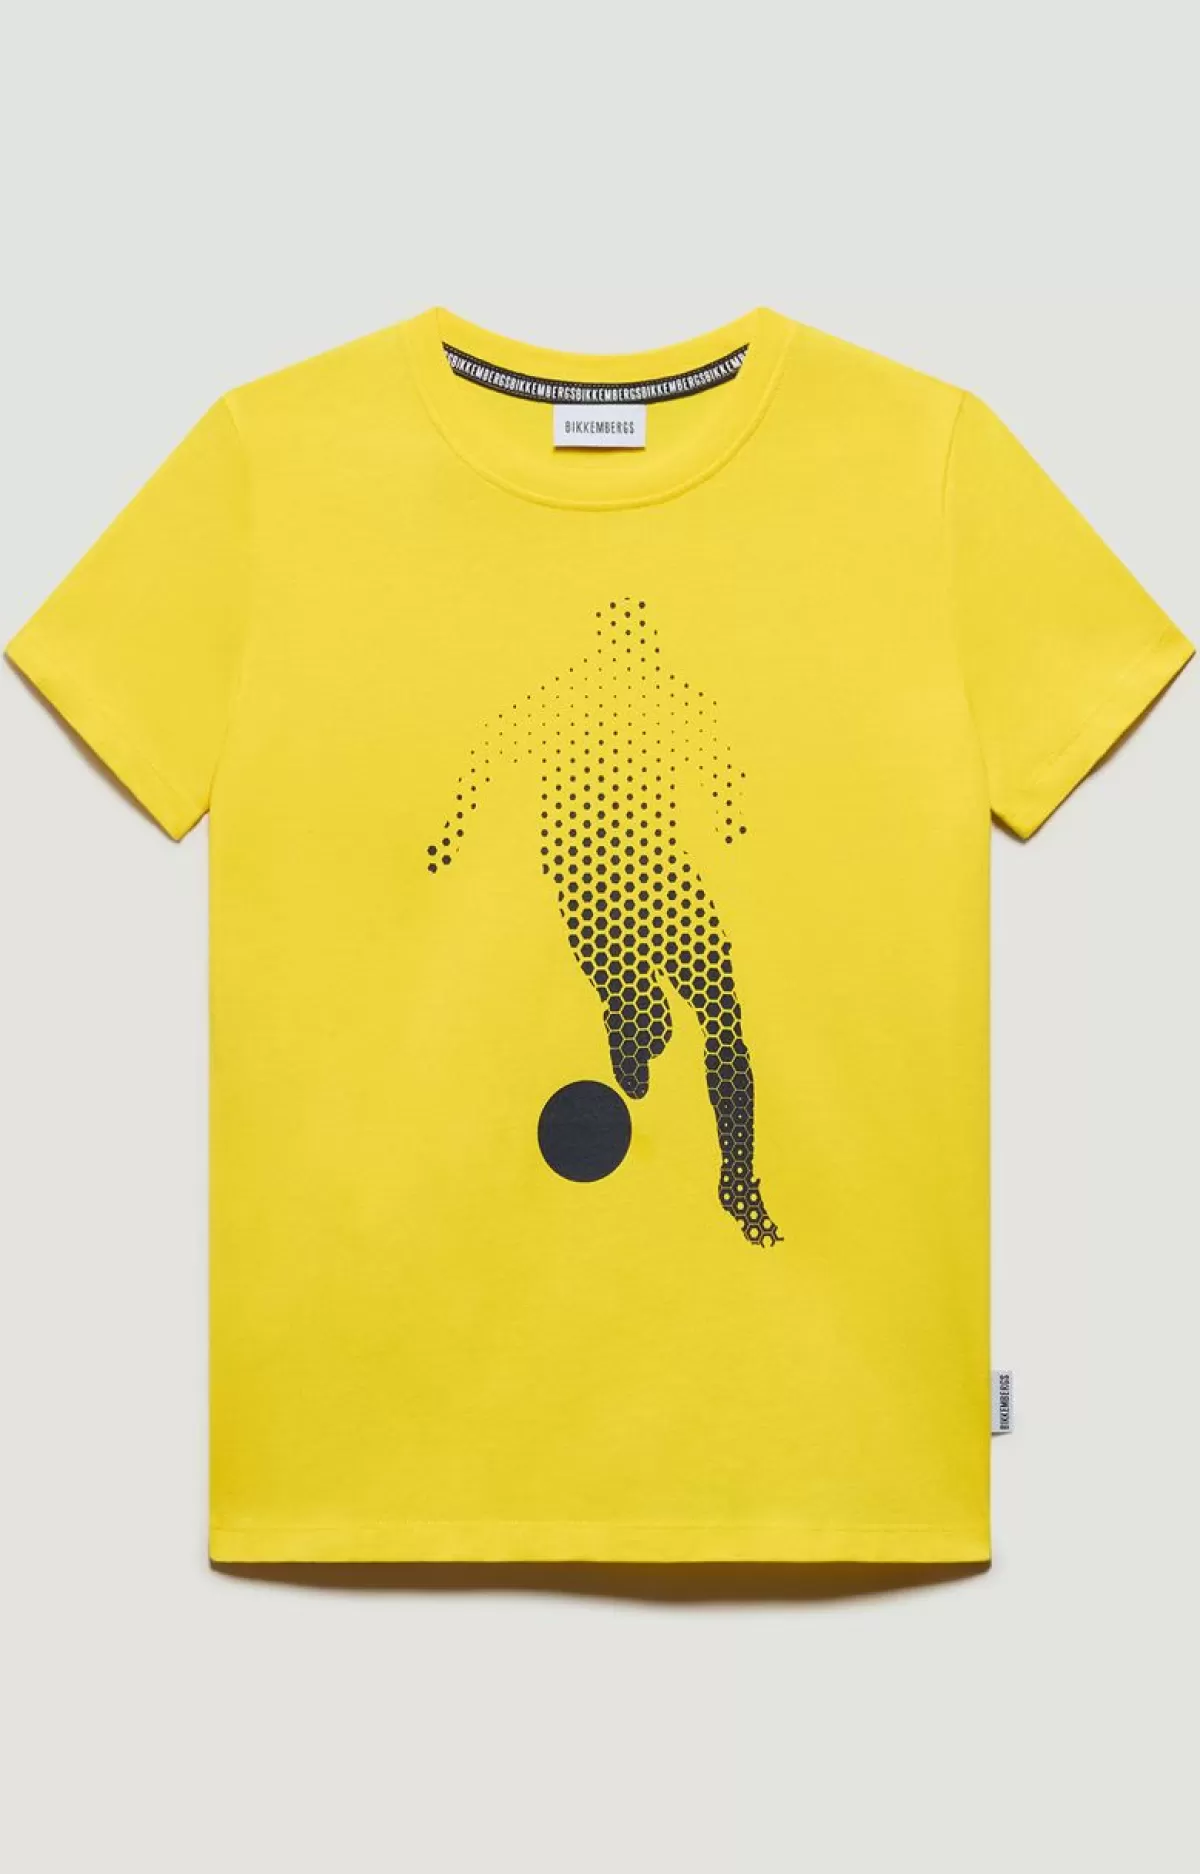 Bikkembergs Boys' T-Shirt - Soccer Print Navy Online